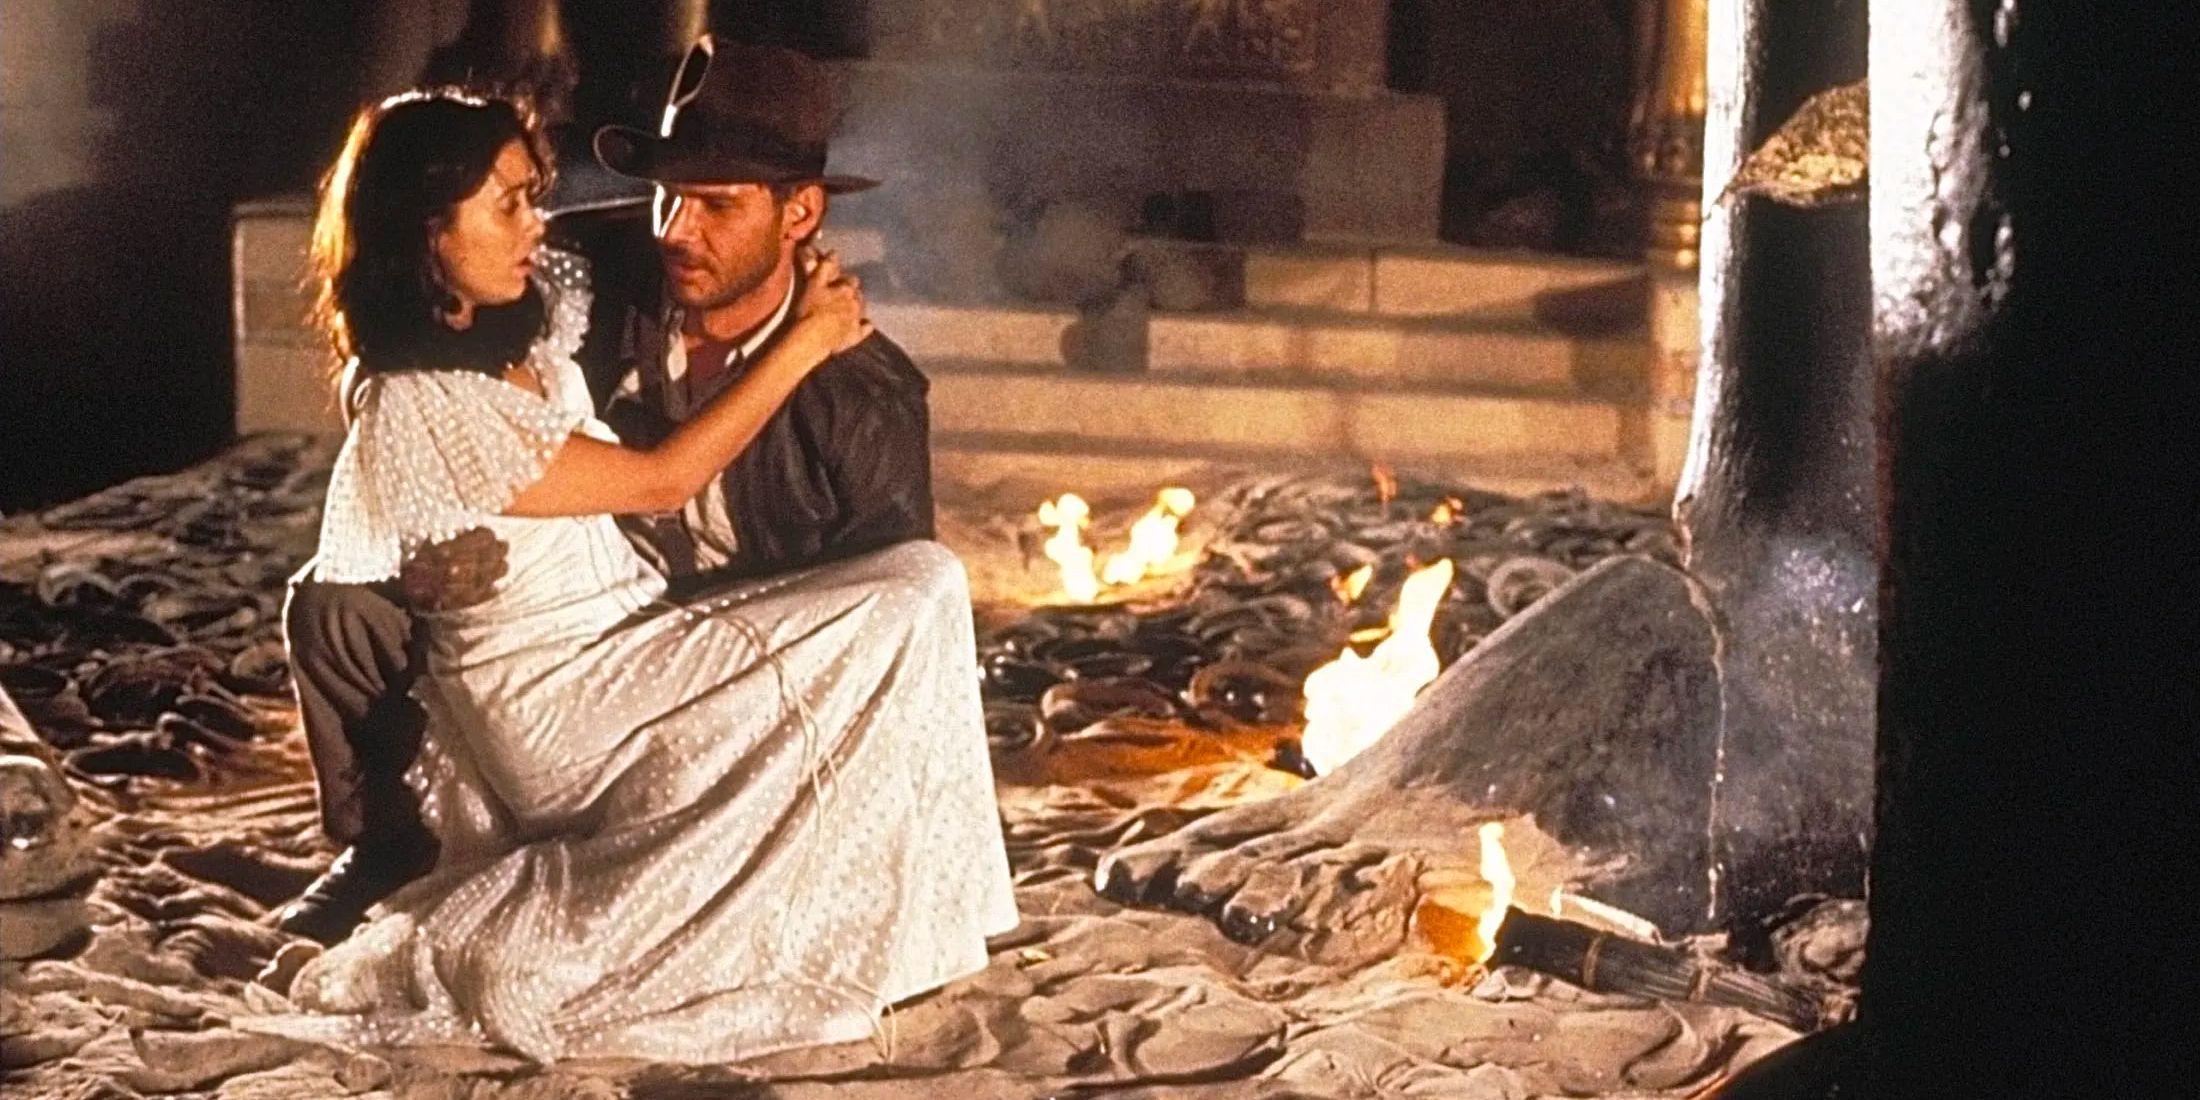 Indiana Jones et Marion sont coincés dans une fosse infestée de serpents. 